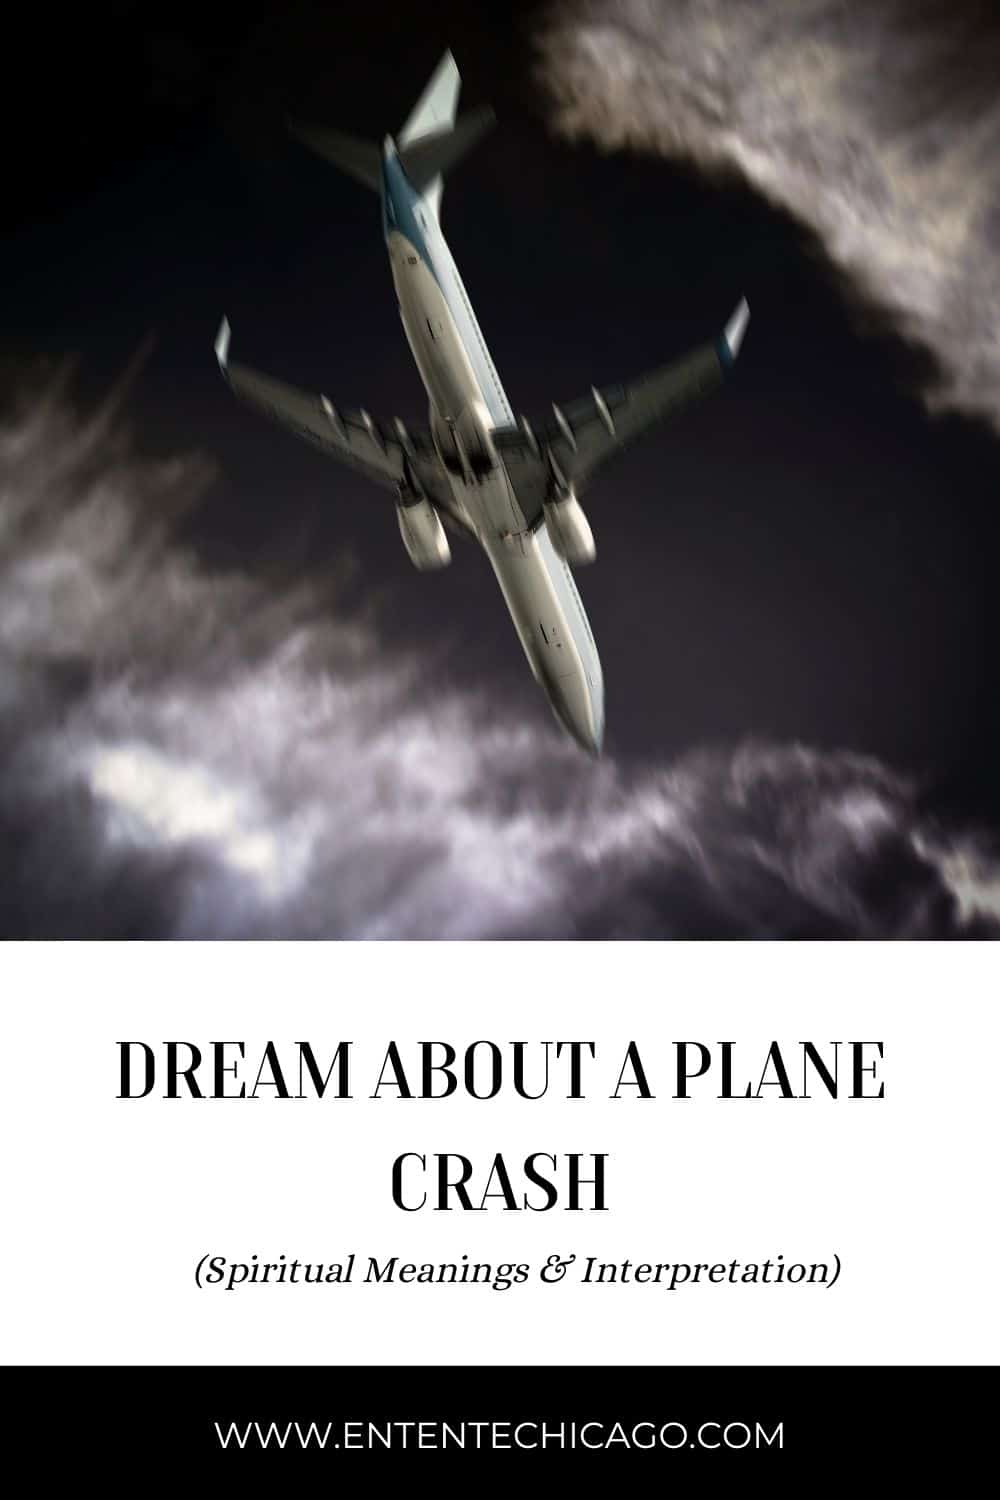  सपने में विमान दुर्घटना को पानी में देखना (सौभाग्यपूर्ण व्याख्या)